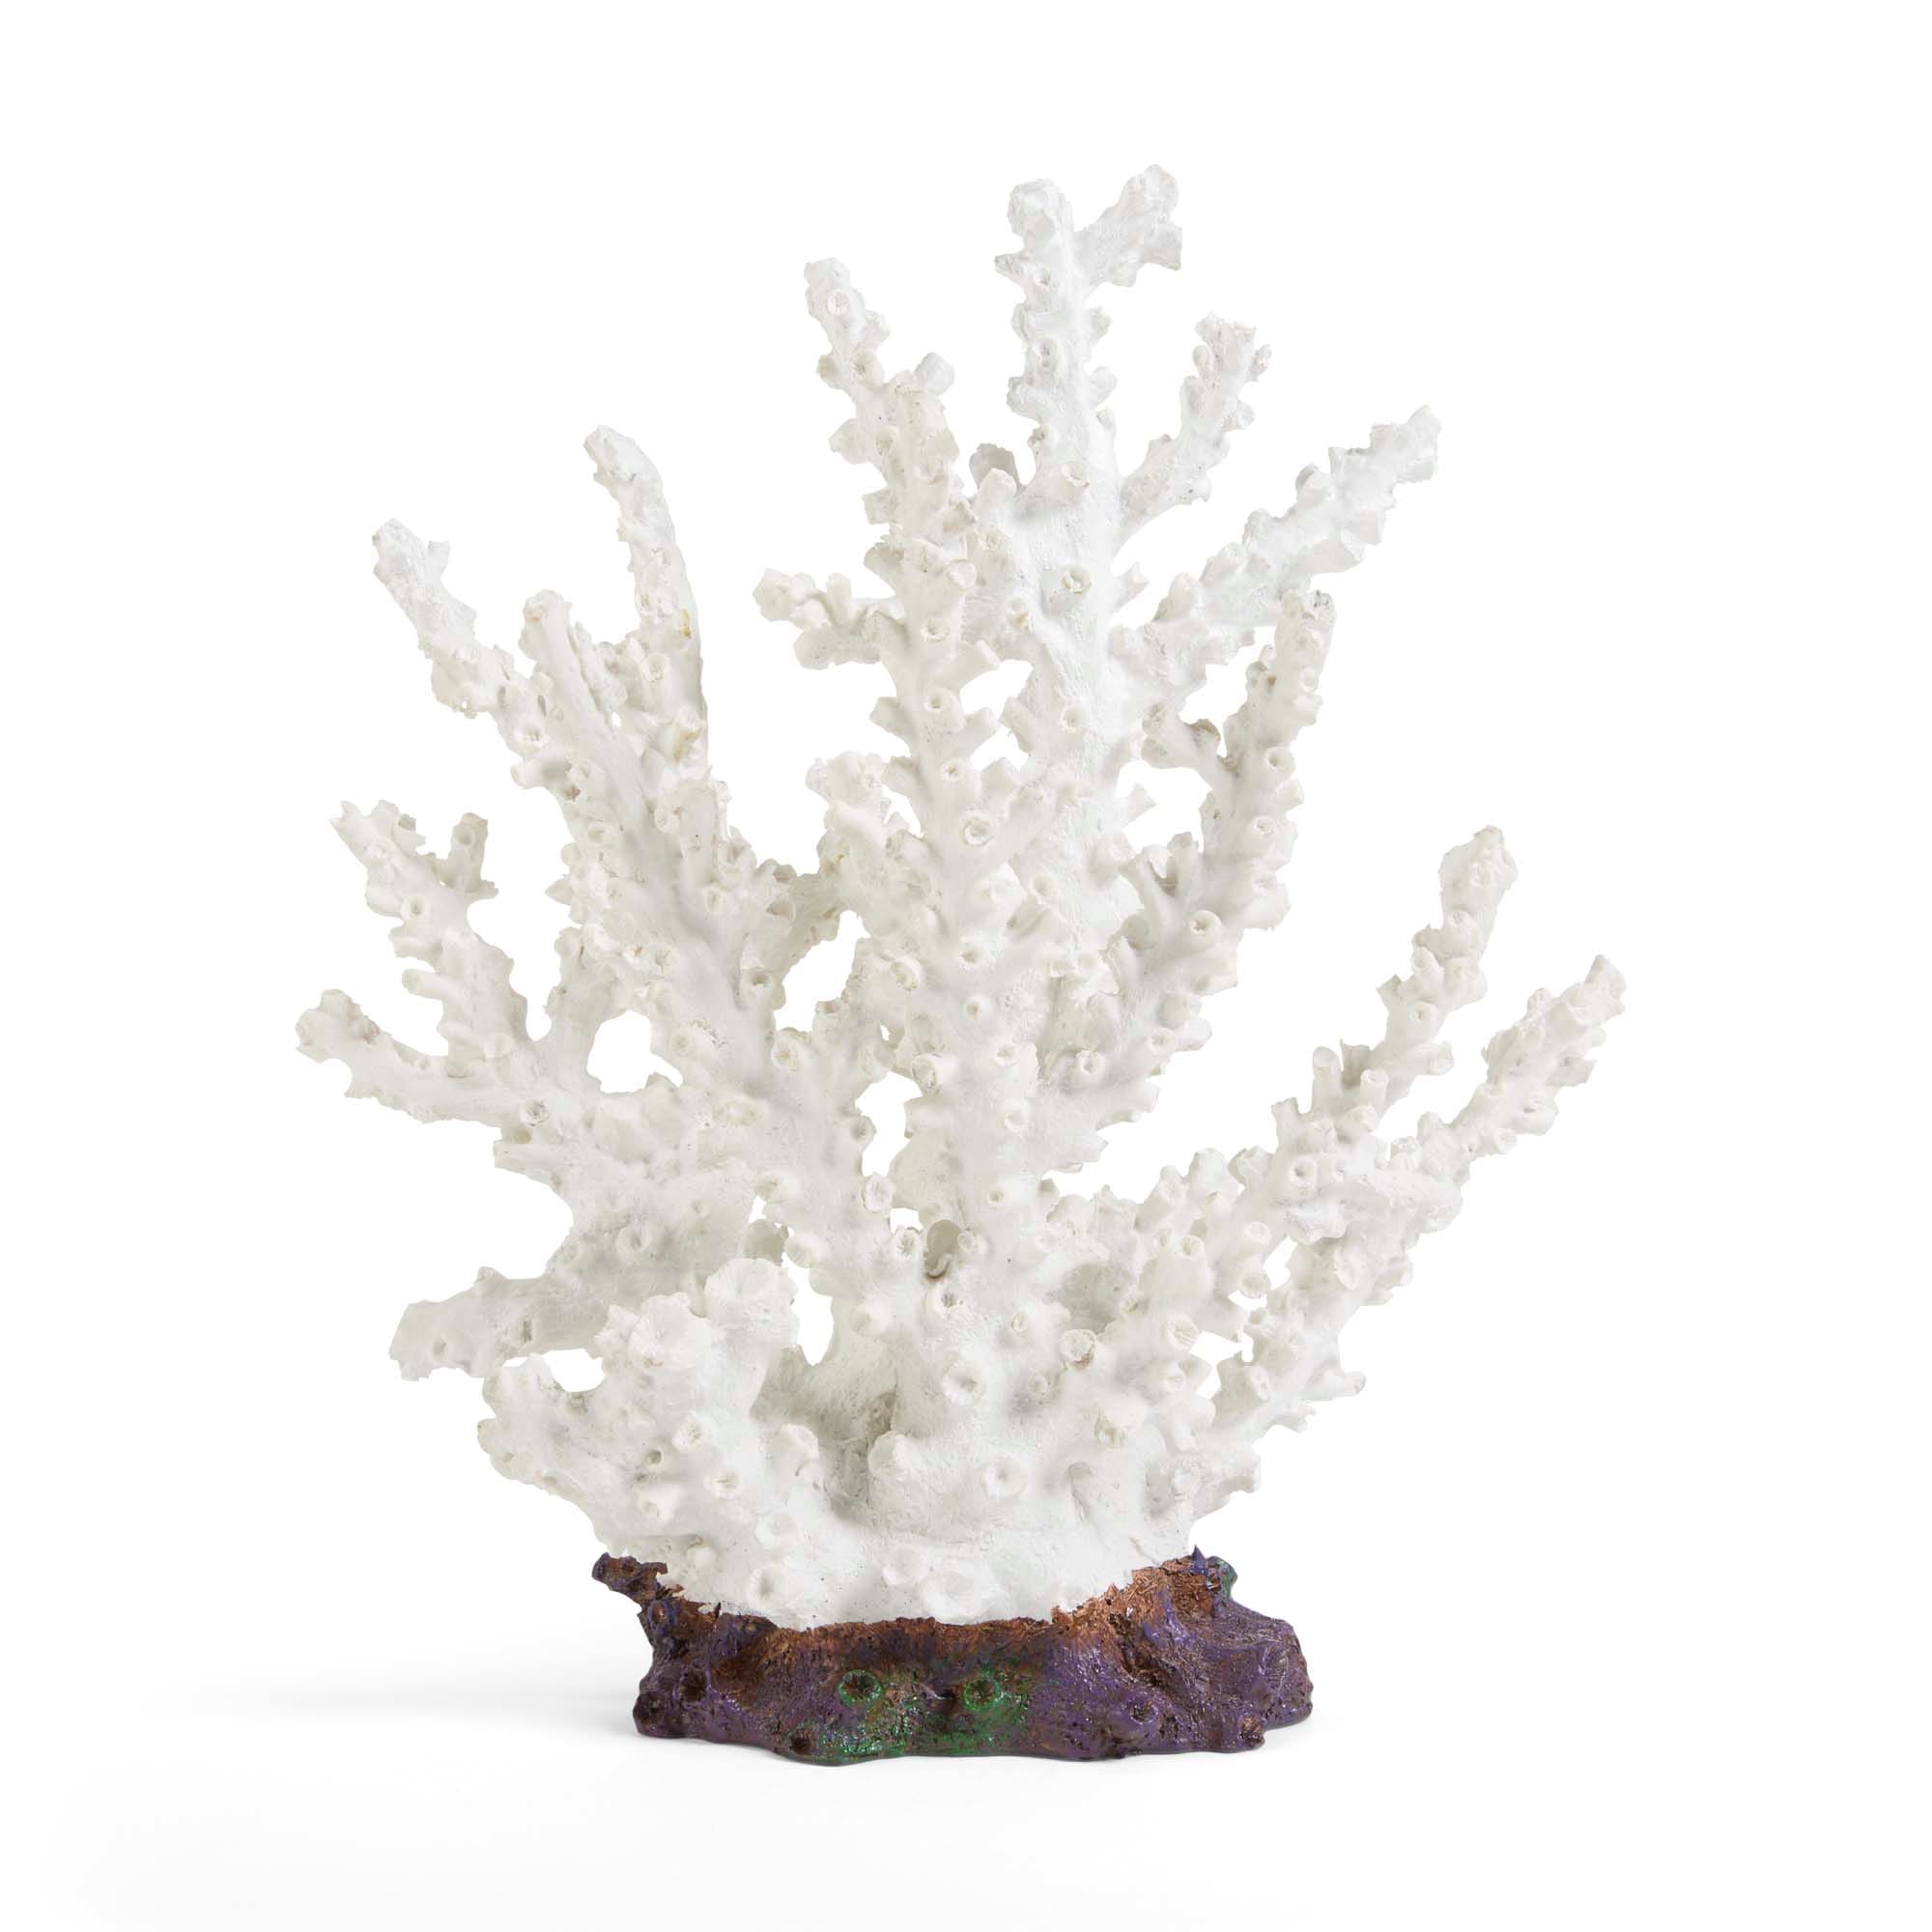 Geroosterd Televisie kijken plotseling Imagitarium White Coral Aquarium Decor, Large | Petco